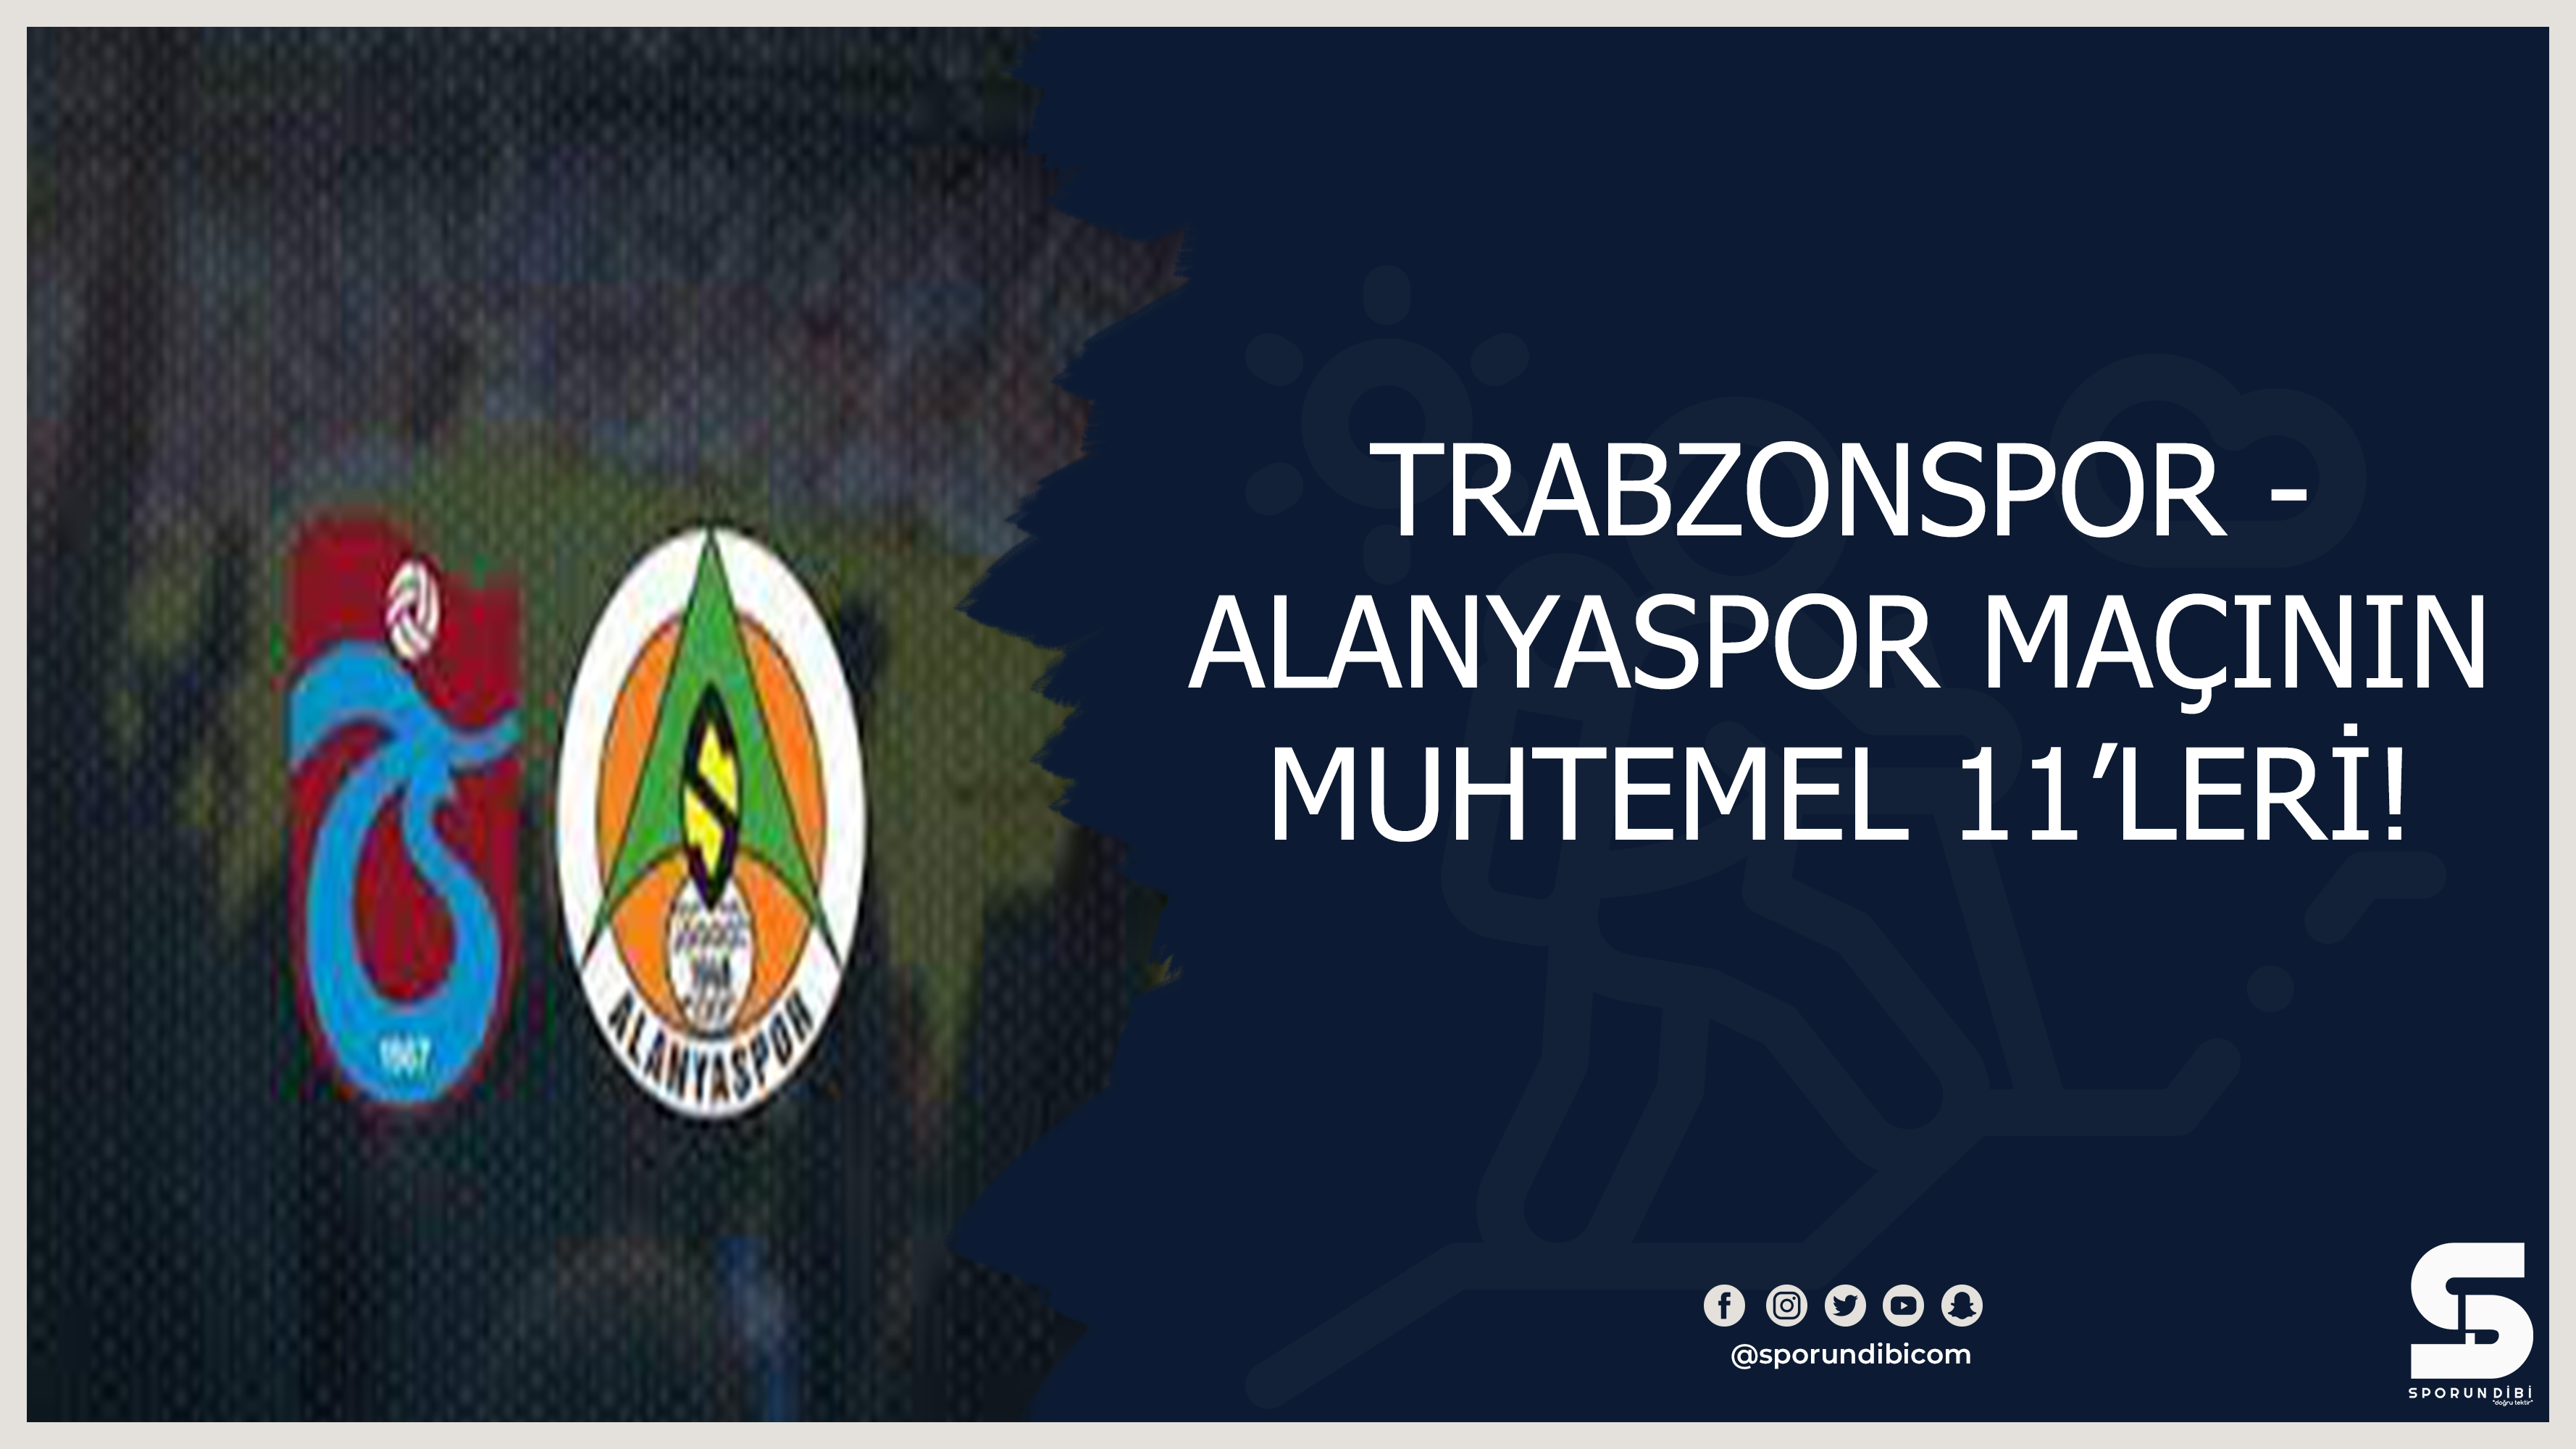 Trabzonspor - Alanyaspor maçının 11'leri belli oldu.